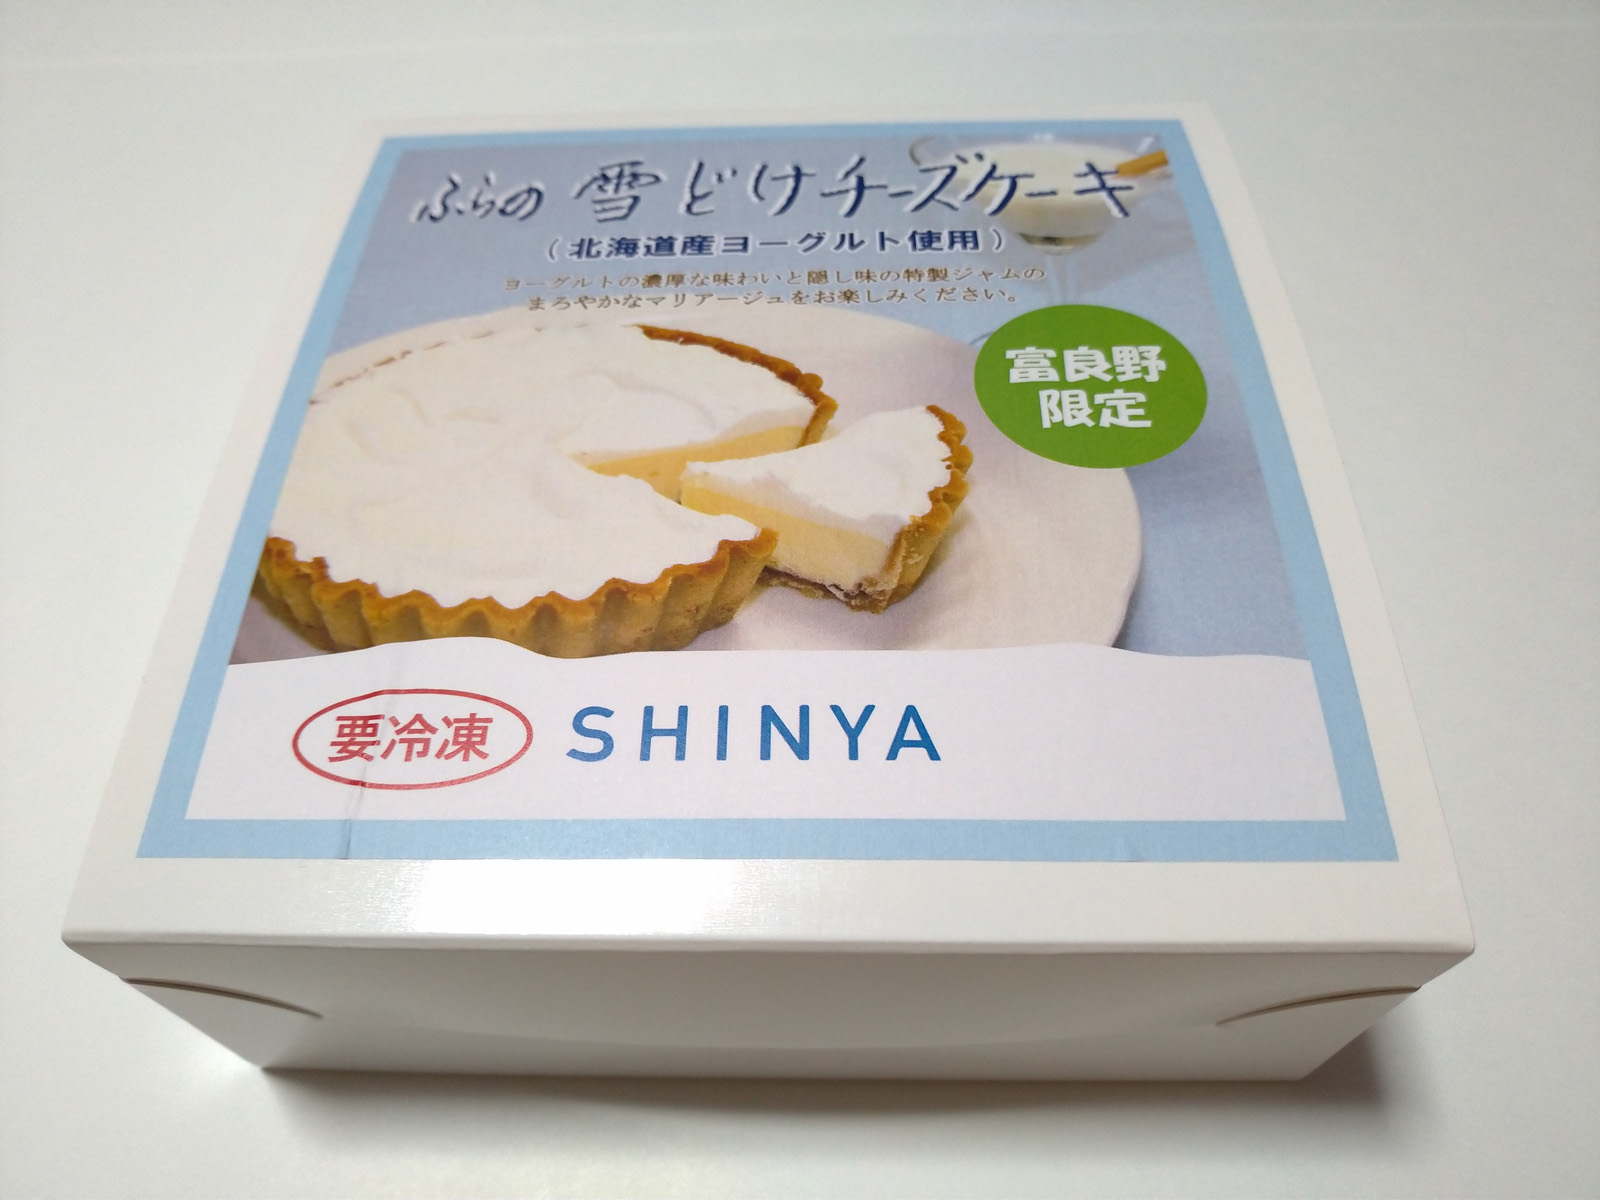 北海道産ヨーグルトを使用した菓子司 新谷 Shinya の富良野限定 雪どけチーズケーキ 北日本サロン